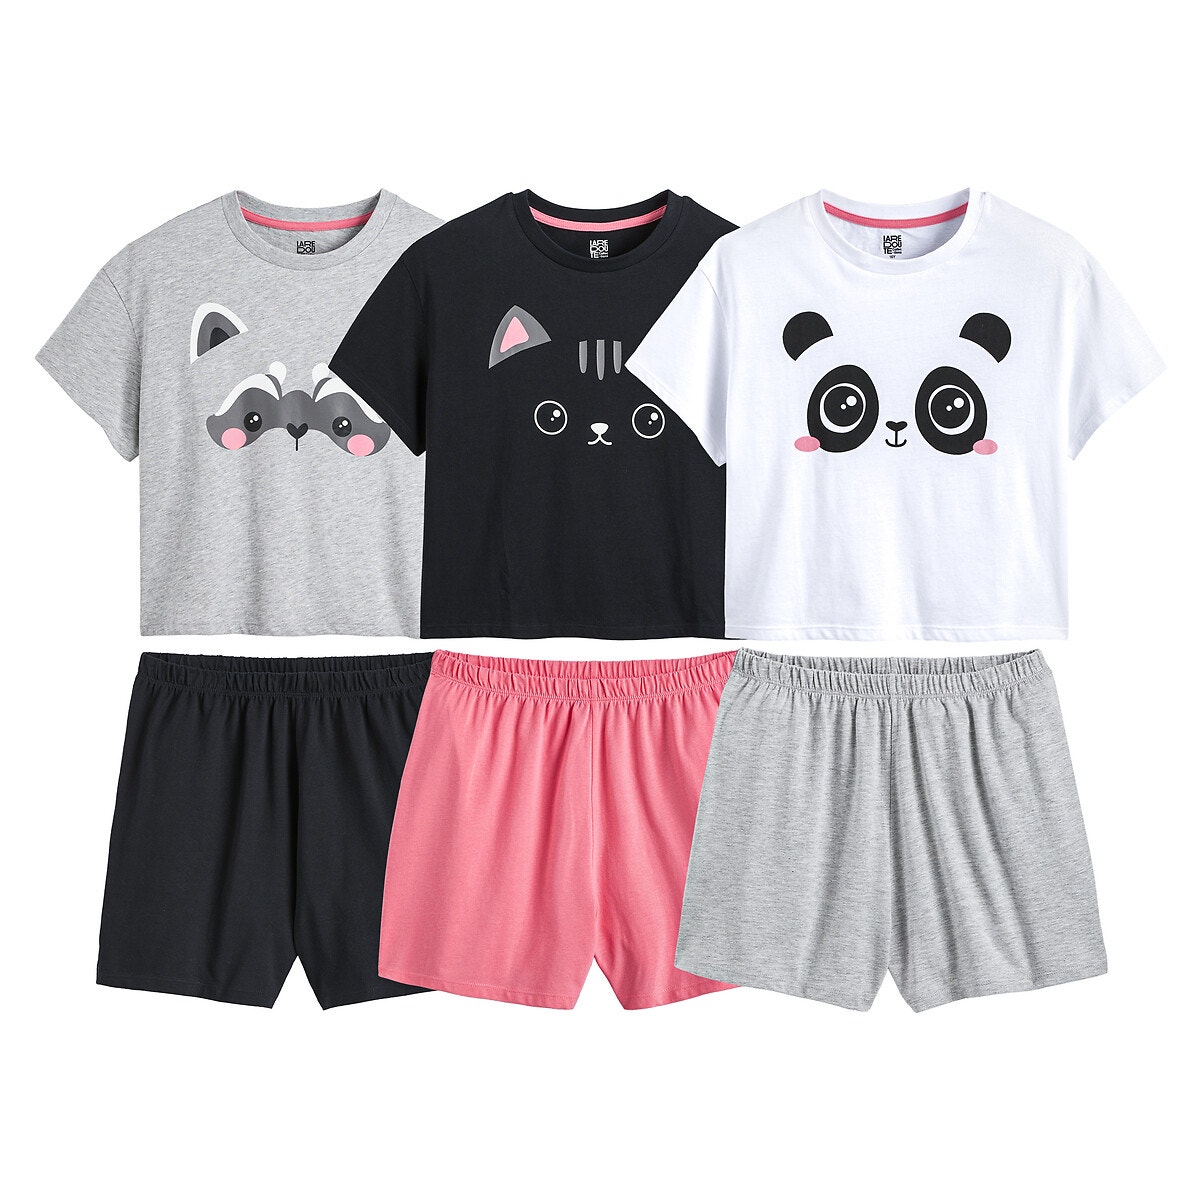 Μόδα > Παιδικά > Κορίτσι > Πιτζάμες, νυχτικά Σετ 3 πιτζάμες με σορτς και μοτίβο ζώα